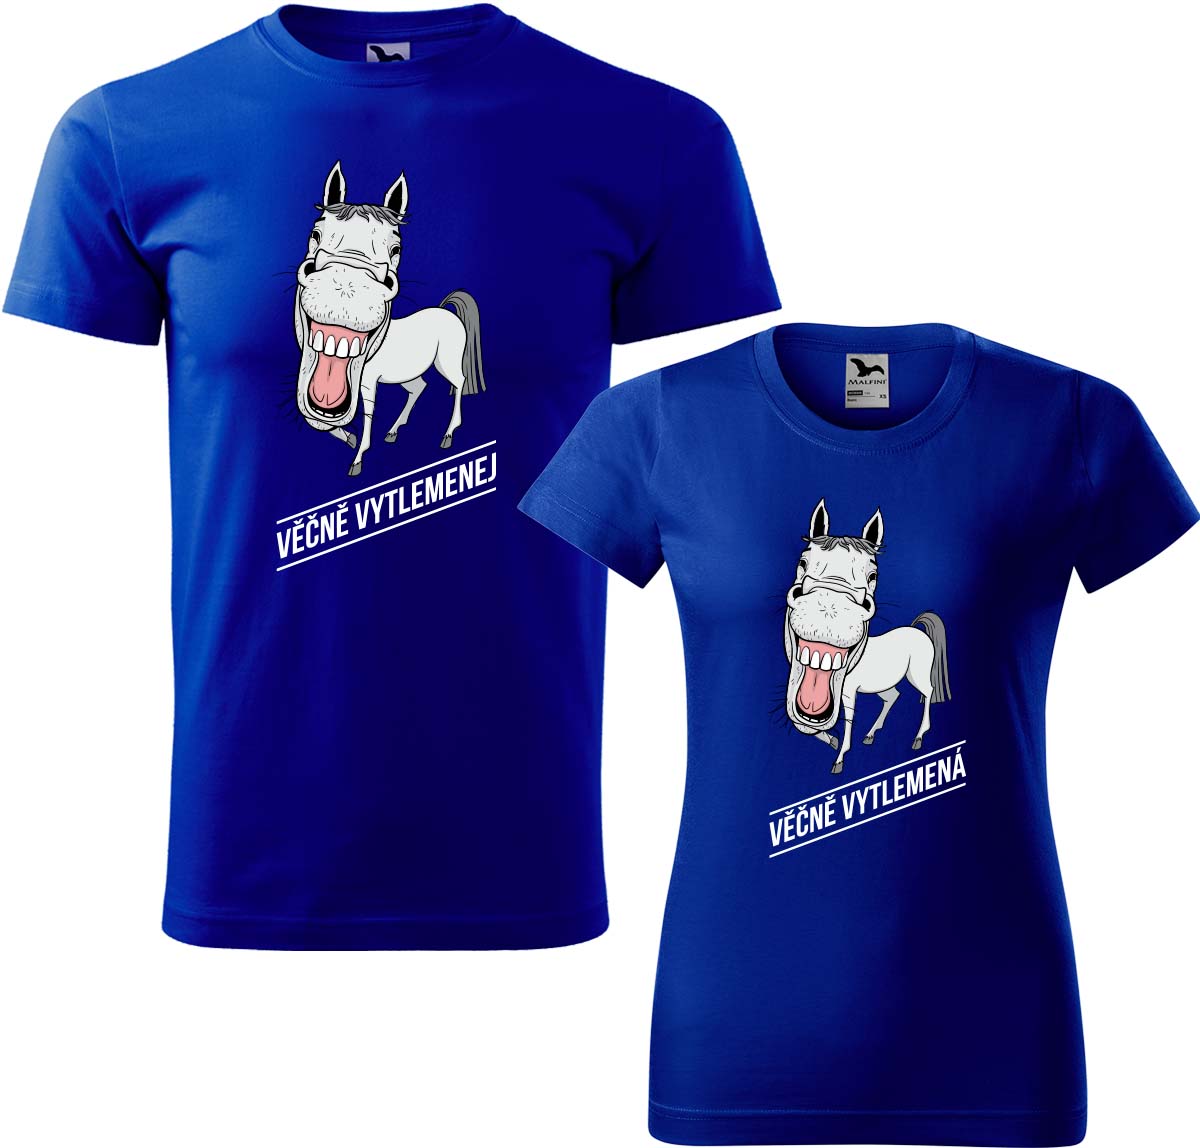 Trička pro páry - Věčně vytlemenej a věčně vytlemená Barva: Královská modrá (05), Velikost dámské tričko: M, Velikost pánské tričko: M